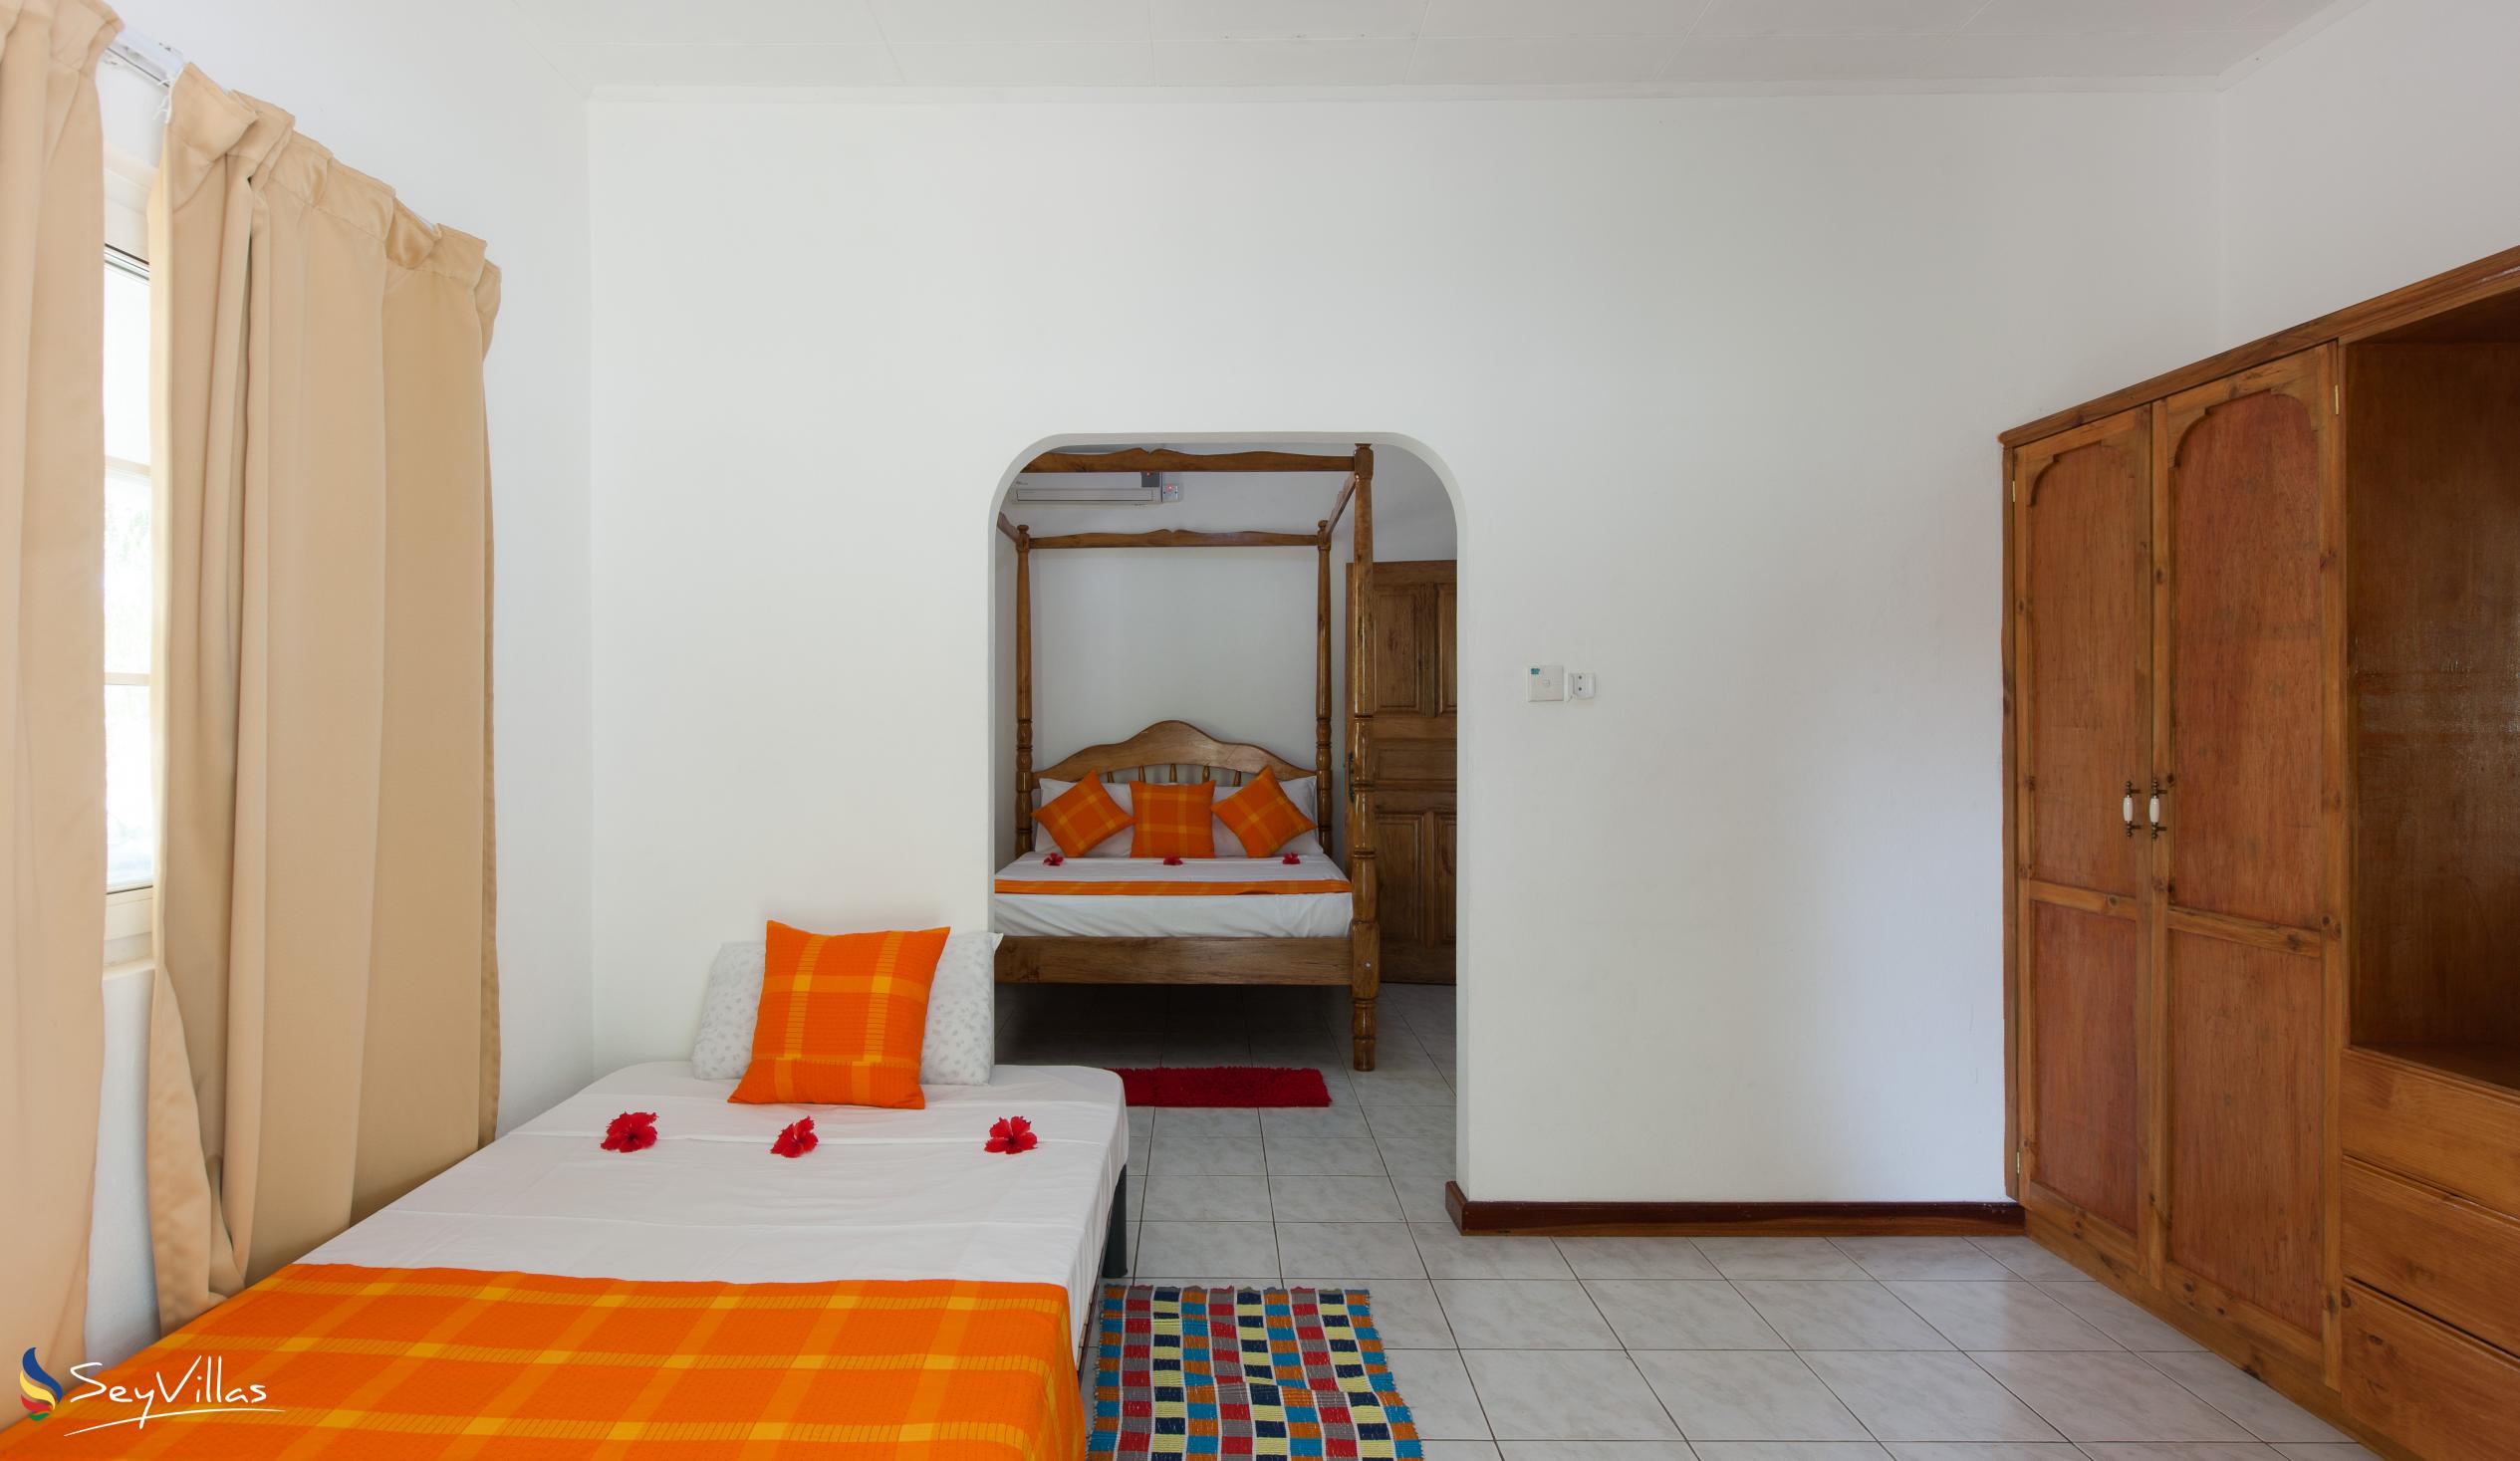 Photo 46: Villa Confort - Family Room 1 - Praslin (Seychelles)